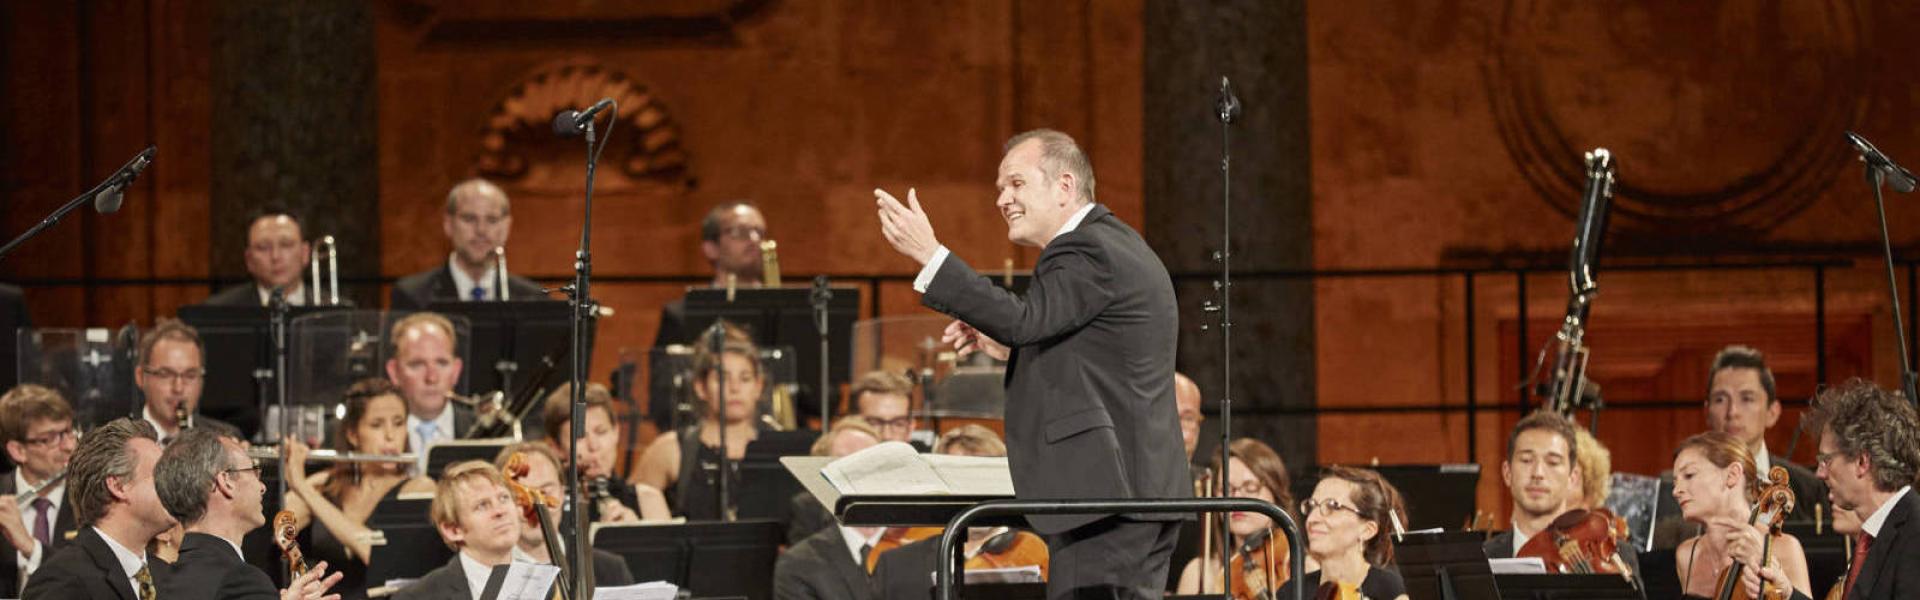 François-Xavier Roth conducting Les Siècles